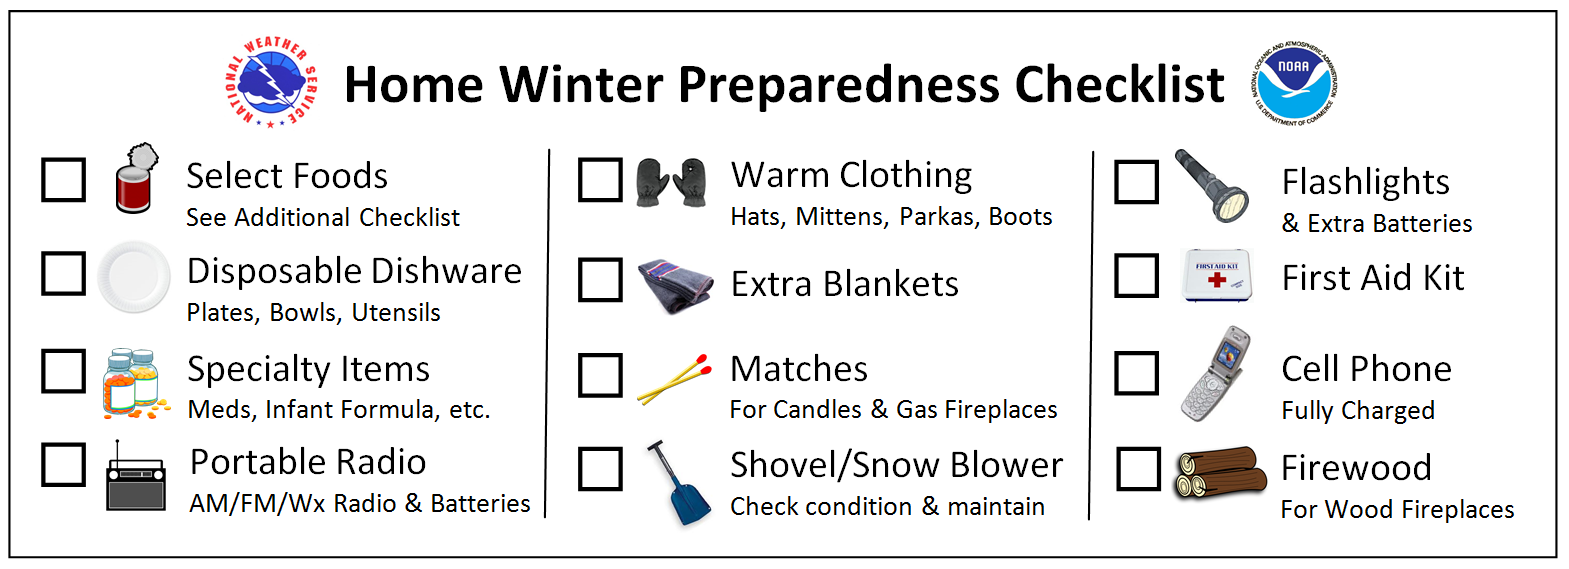 Home Winter Preparedness Checklist